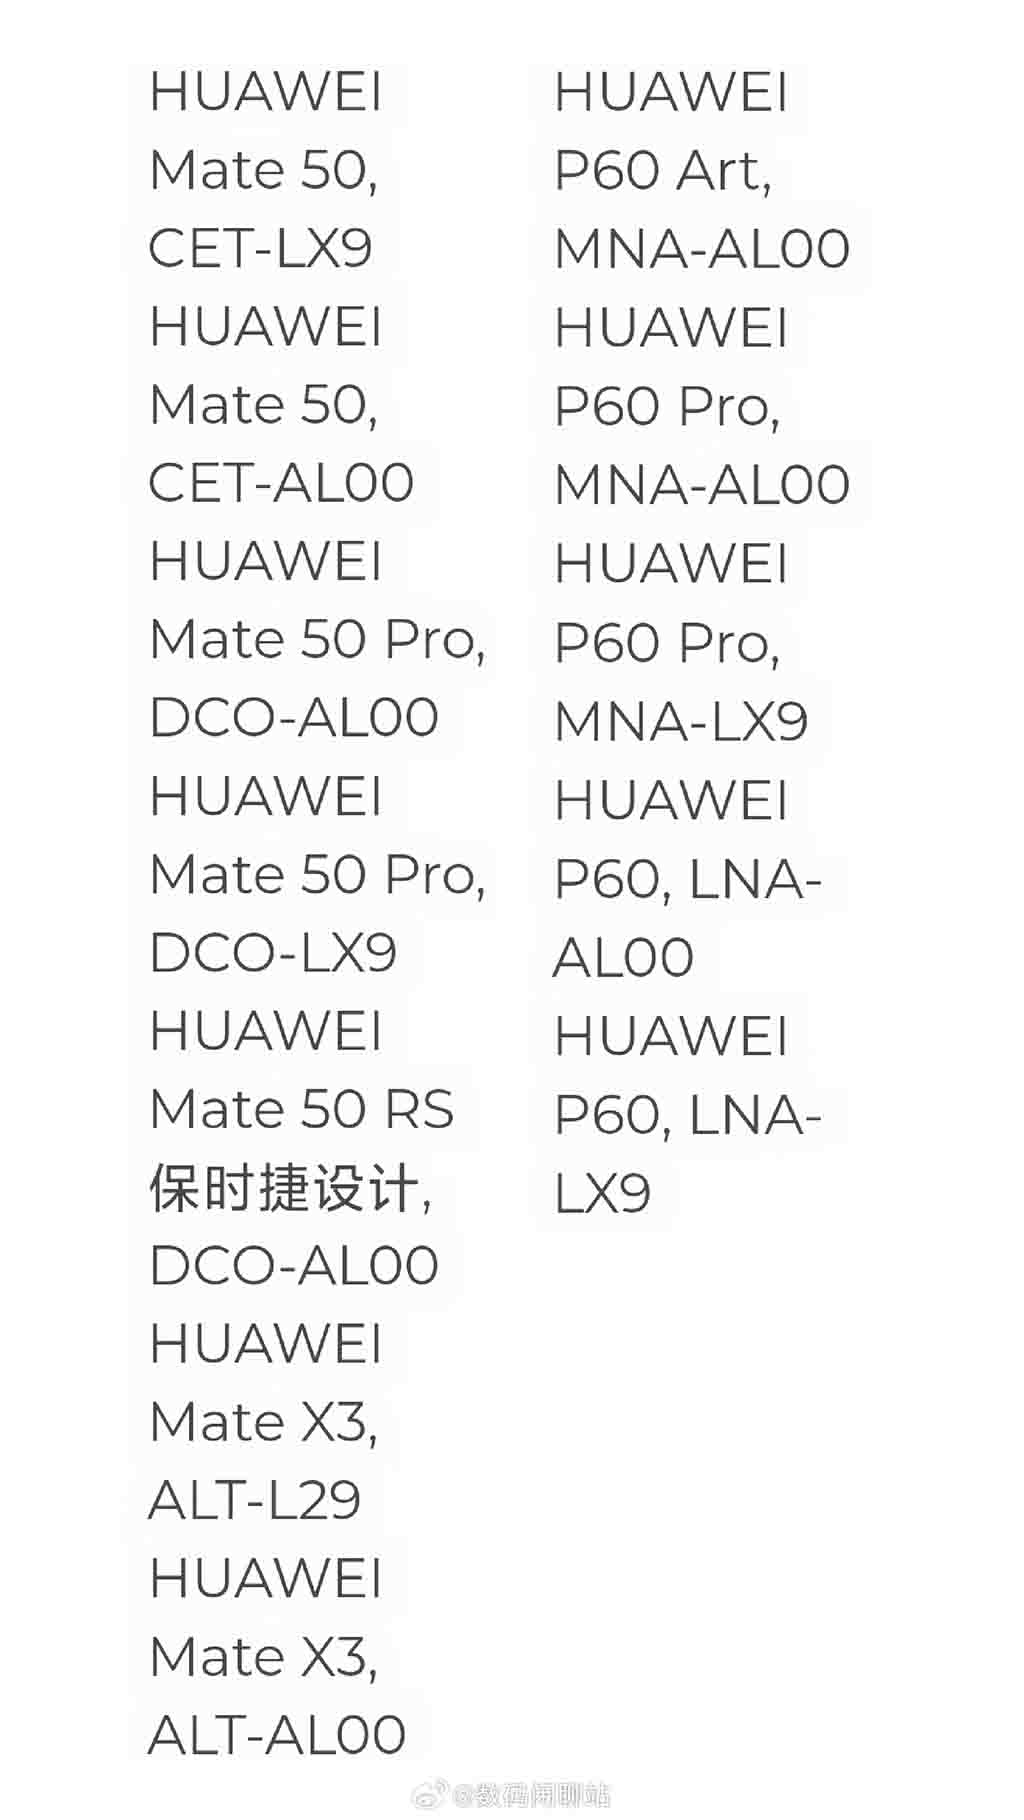 4G Huawei phones models